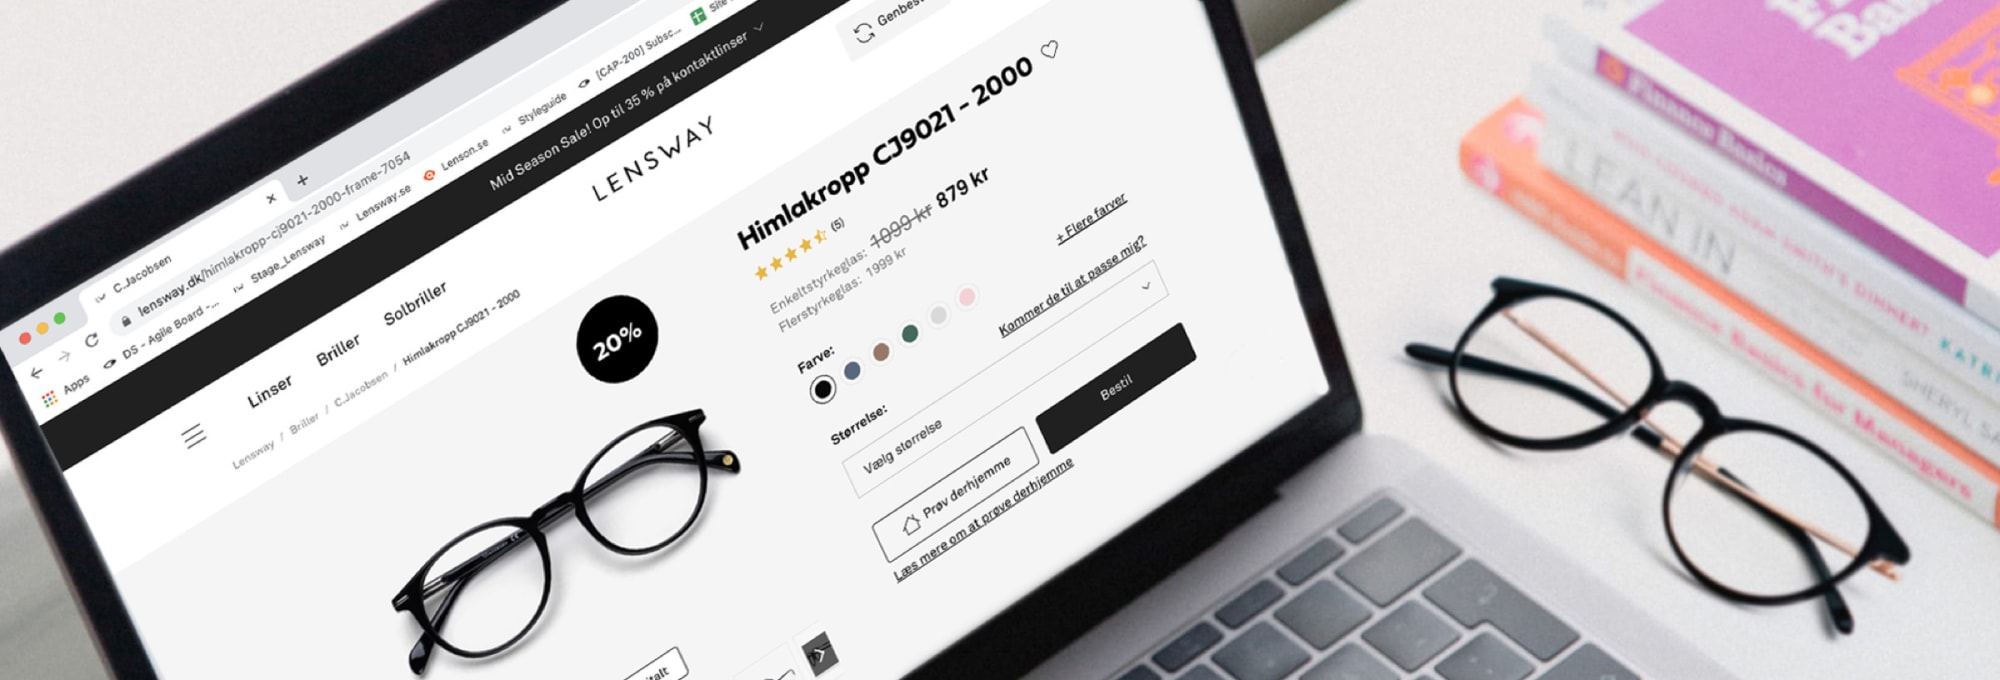 Hvordan køber man briller på nettet?